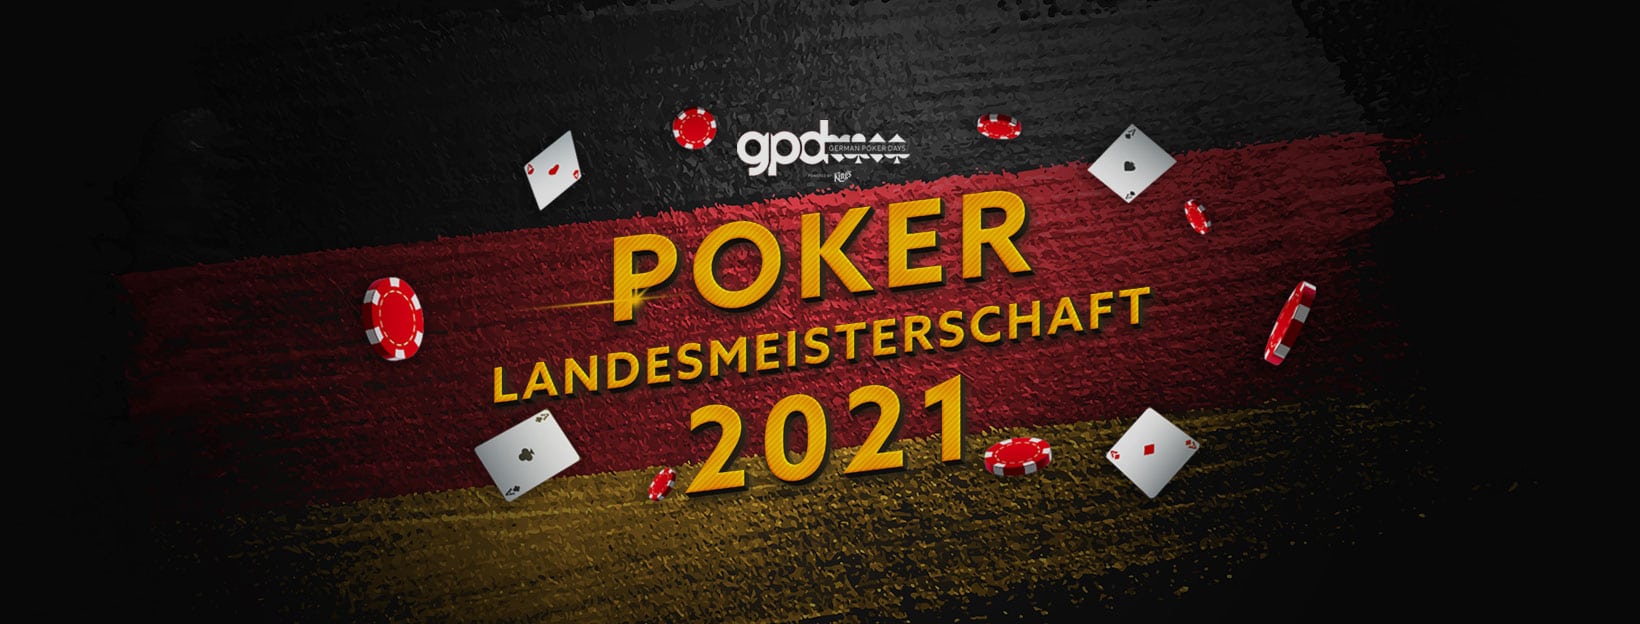 Poker Landesmeisterschaft 2021 Sachsen